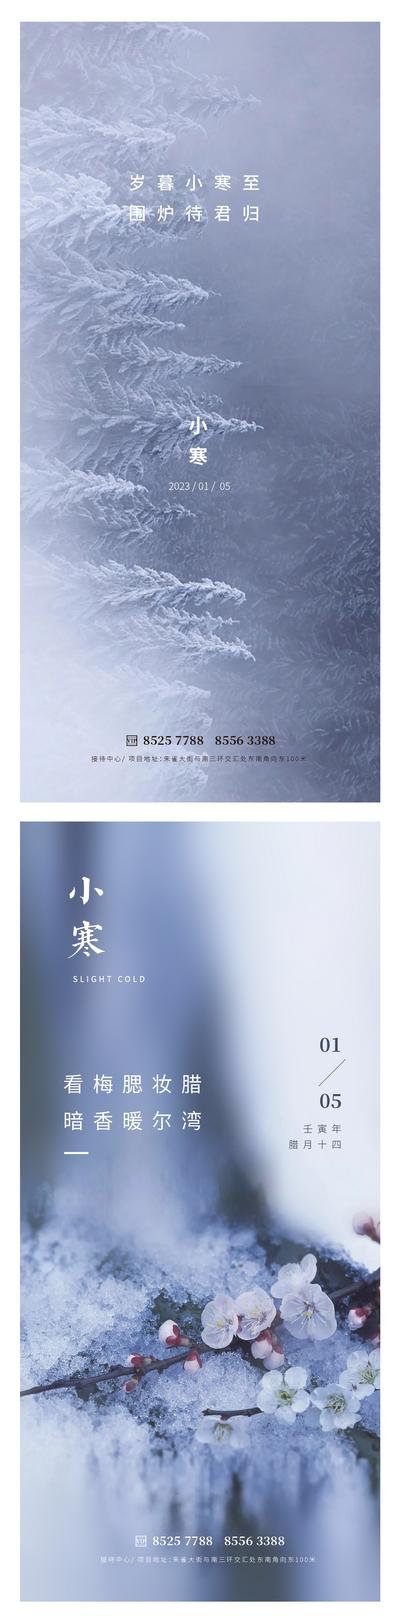 南门网 广告 海报 地产 小寒 节气 树木 梅花 雪 冰